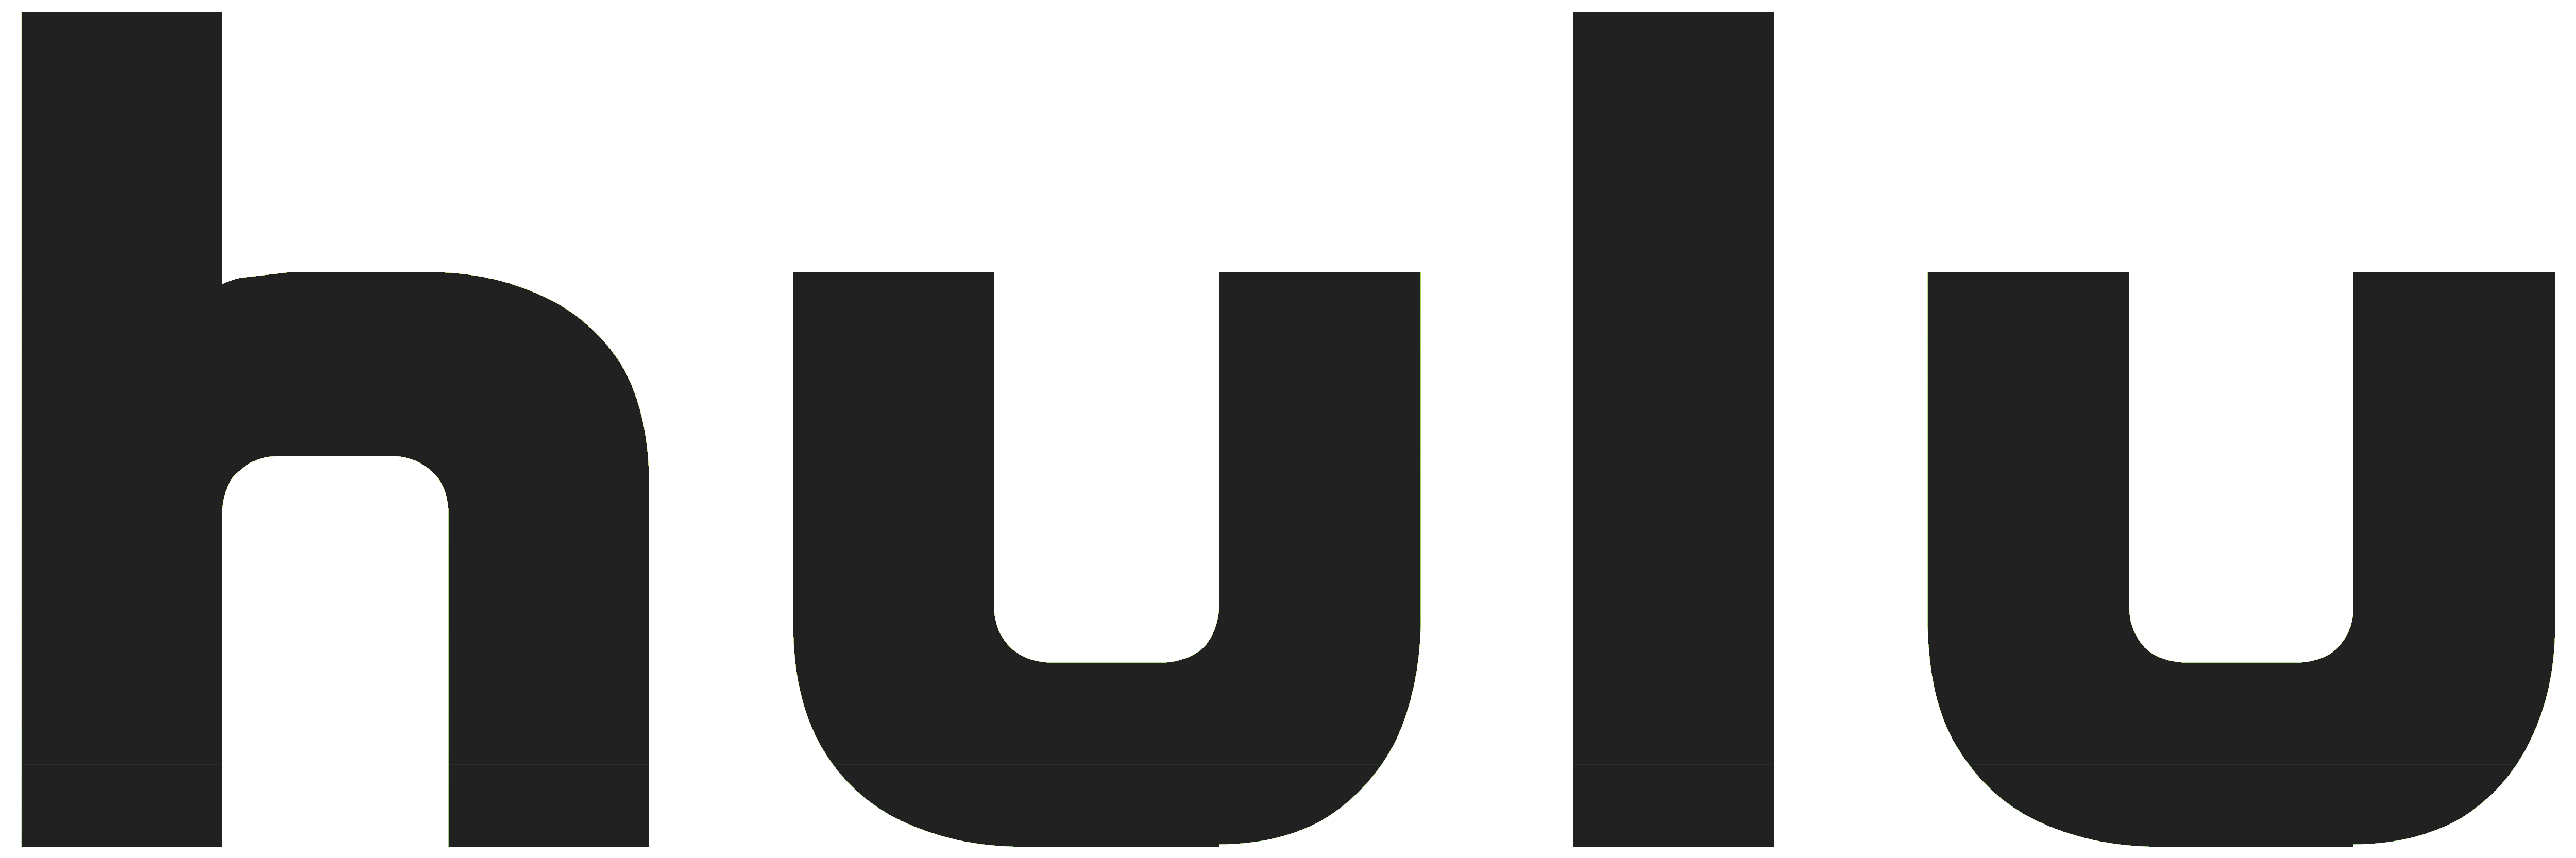 Hulu Logo - Hulu – Logos Download